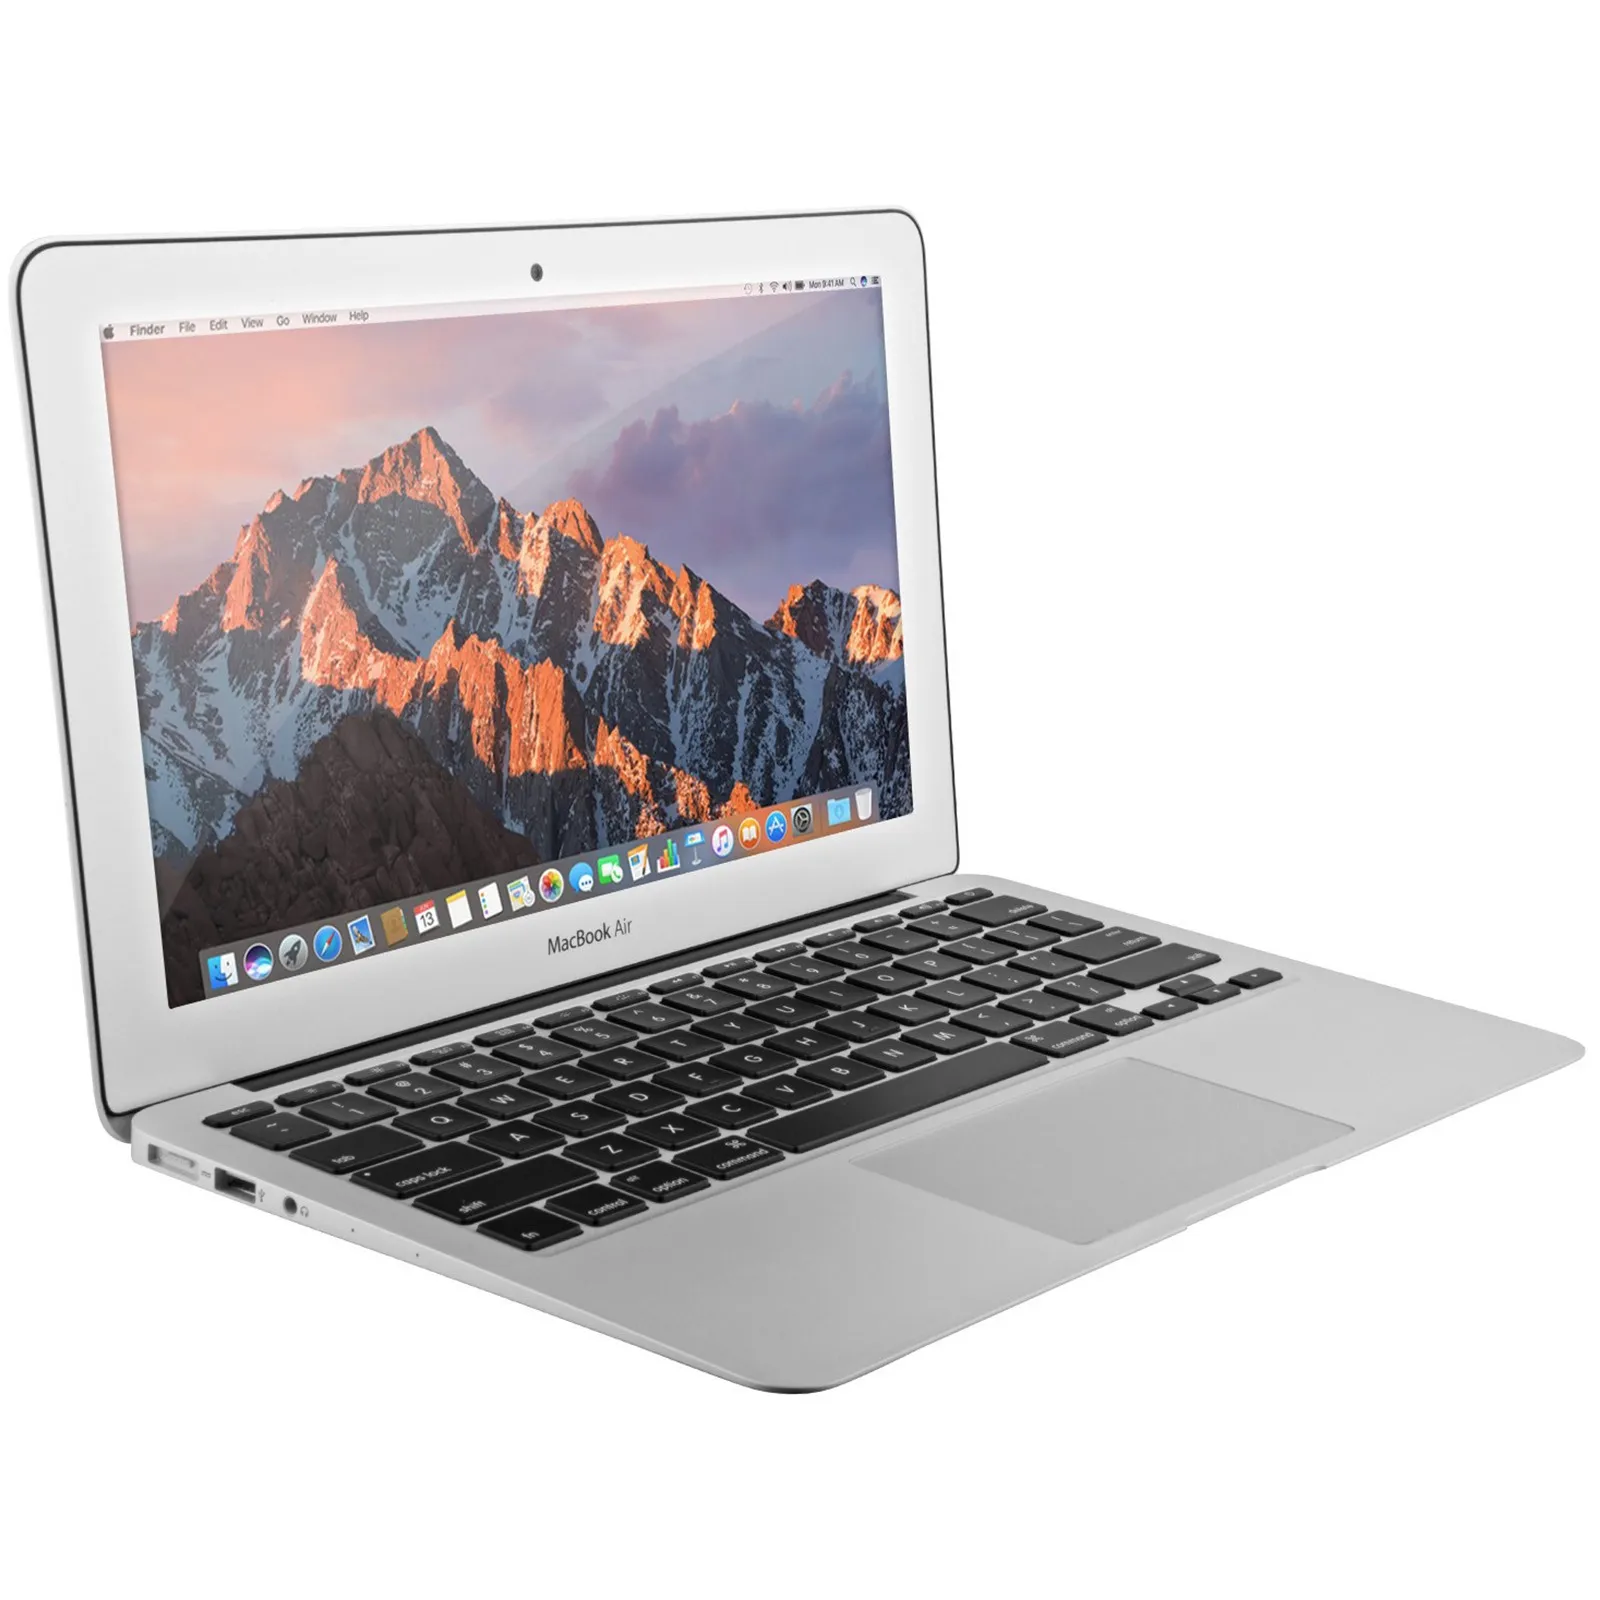 Macbook Air 2015 core i5